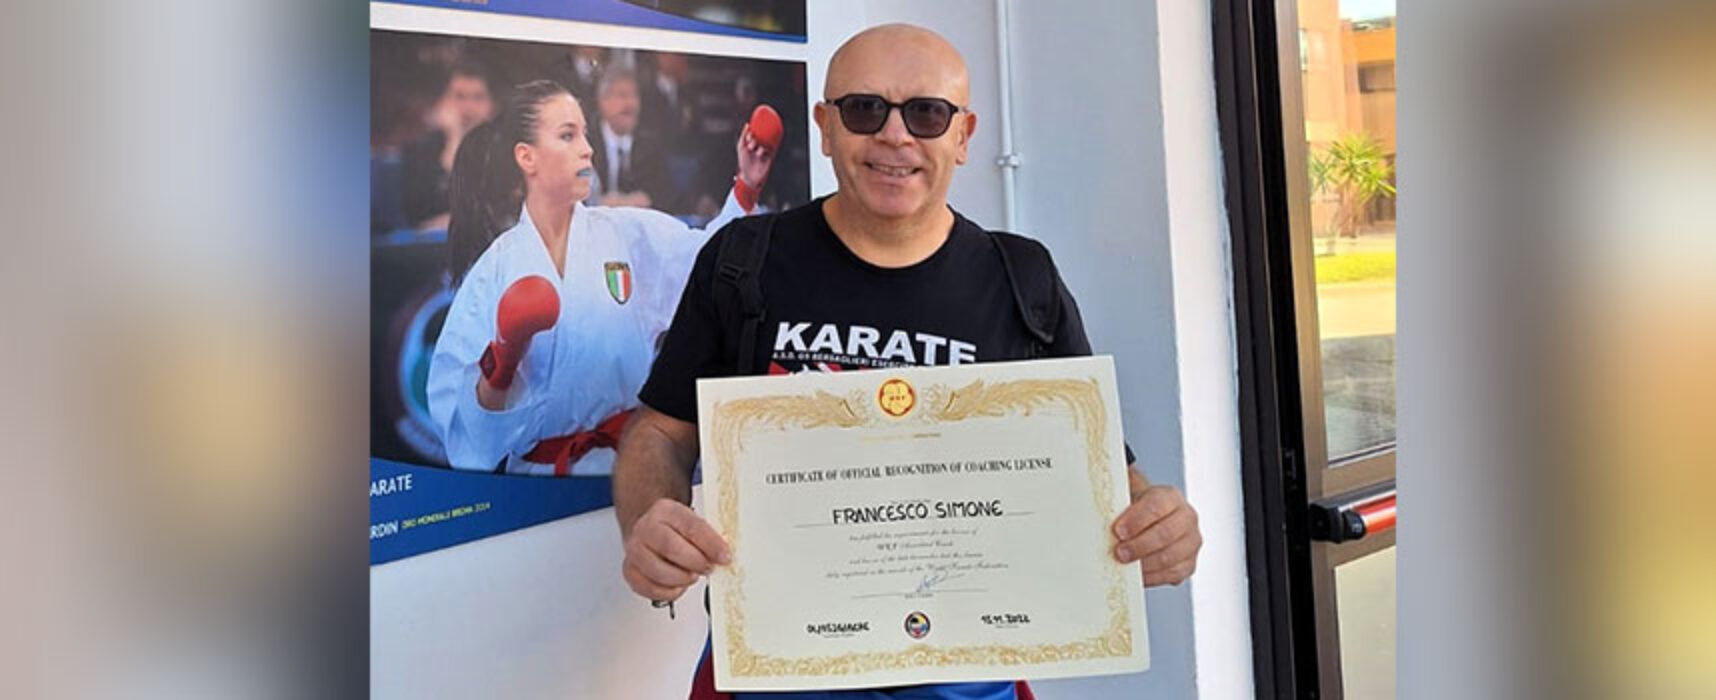 Karate: importante riconoscimento per il maestro biscegliese Francesco Simone